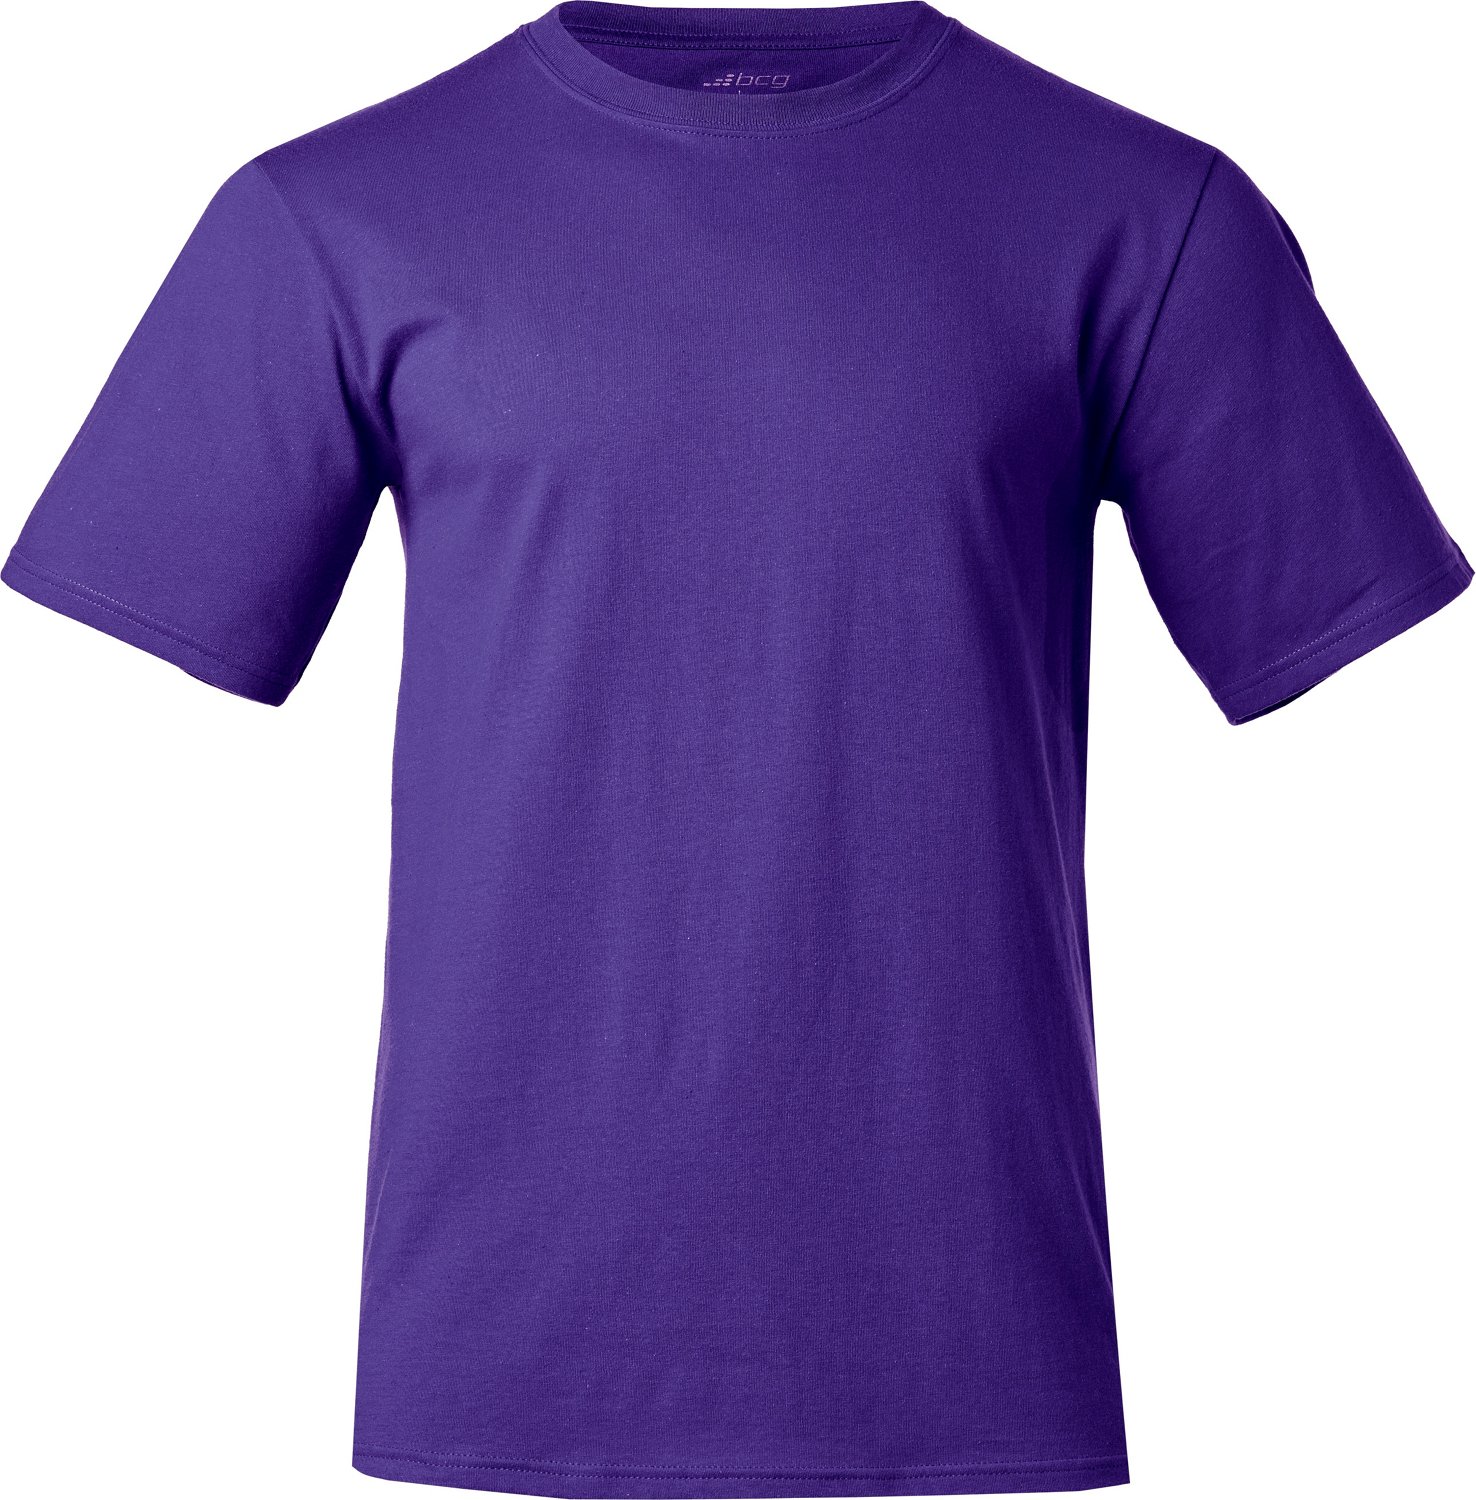 mens purple athletic shirt